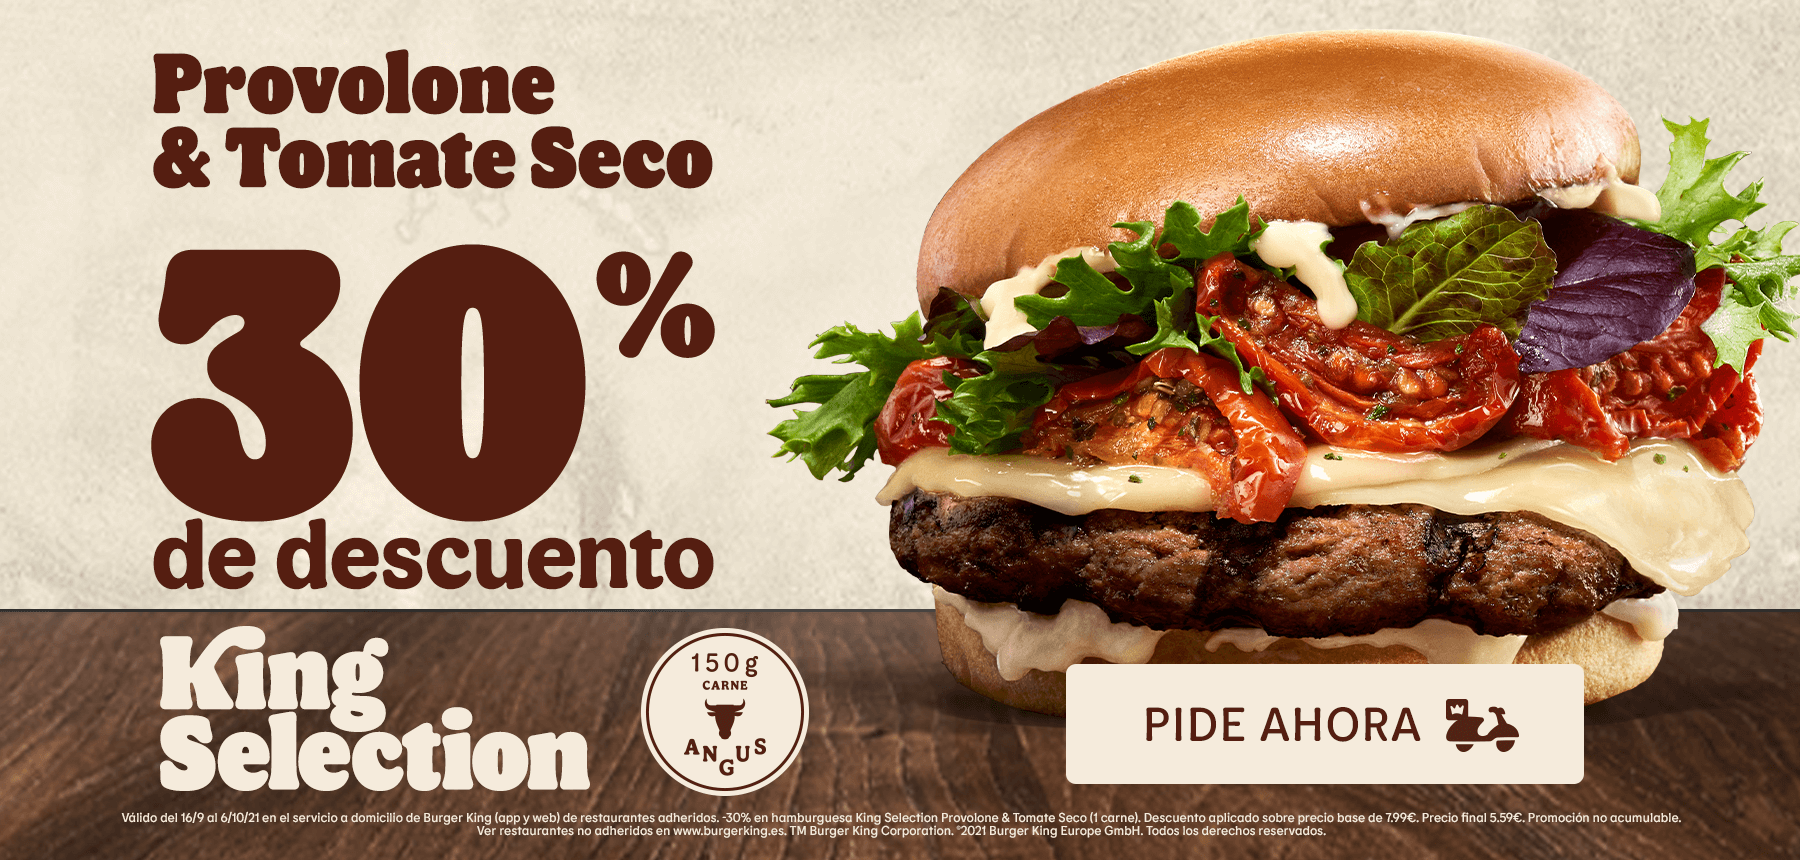 30% de descuento en hamburguesa King Selection Provolone & Tomate Seco (1 carne) en pedidos en el servicio a domicilio de Burger King (app y web)